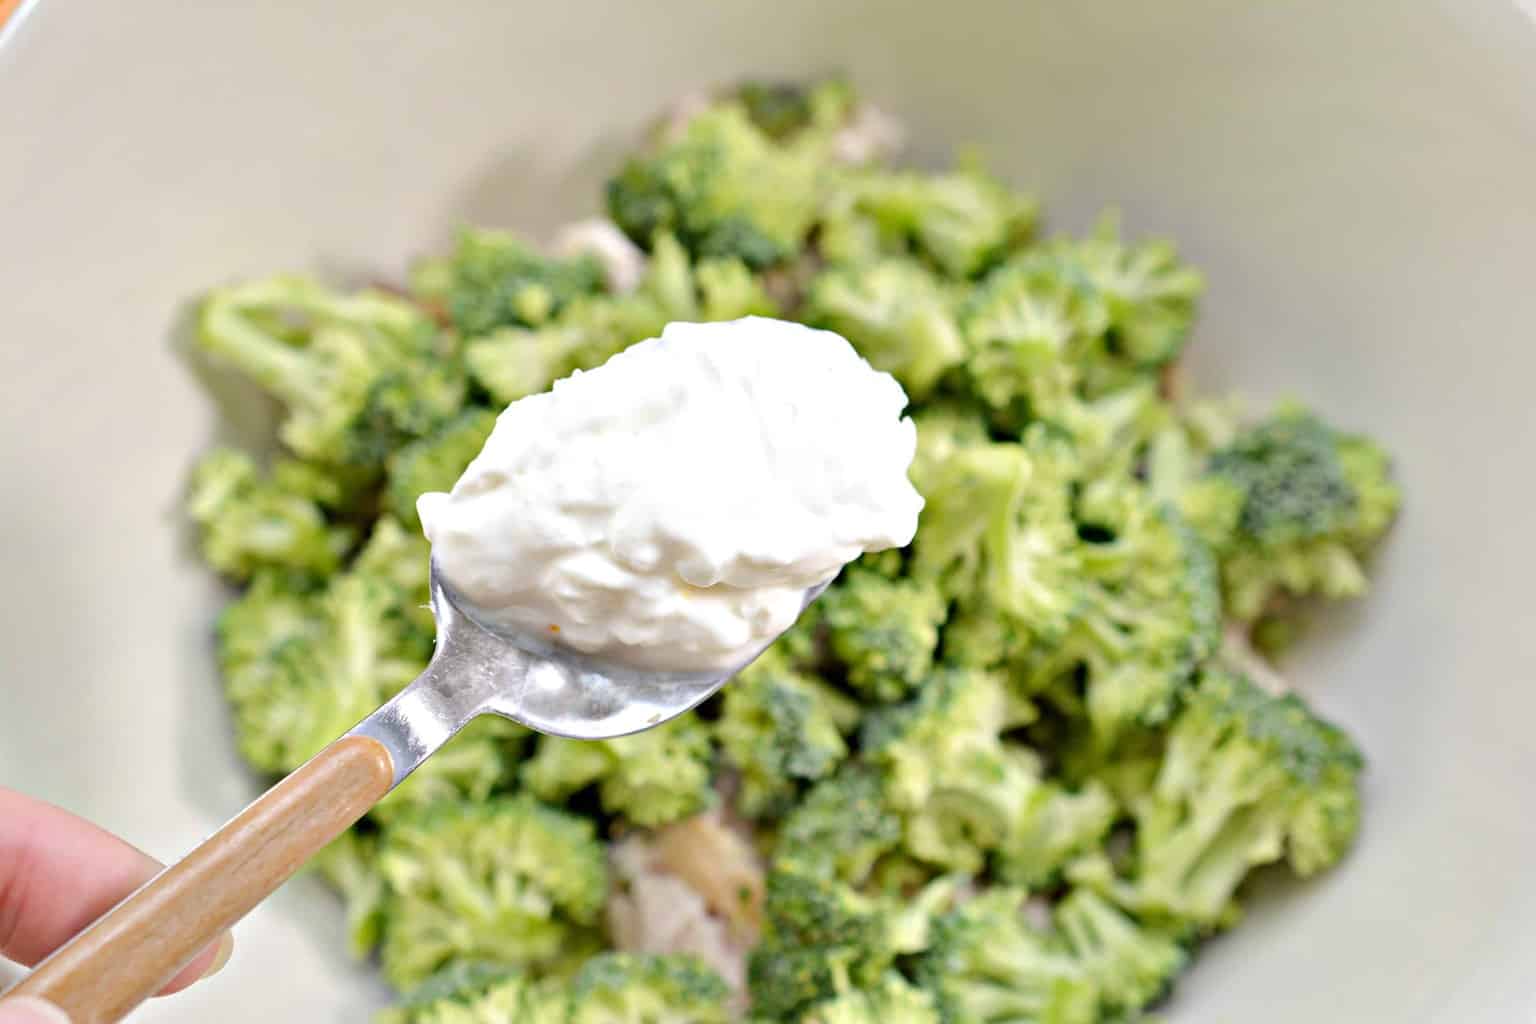 adding sour cream to broccoli